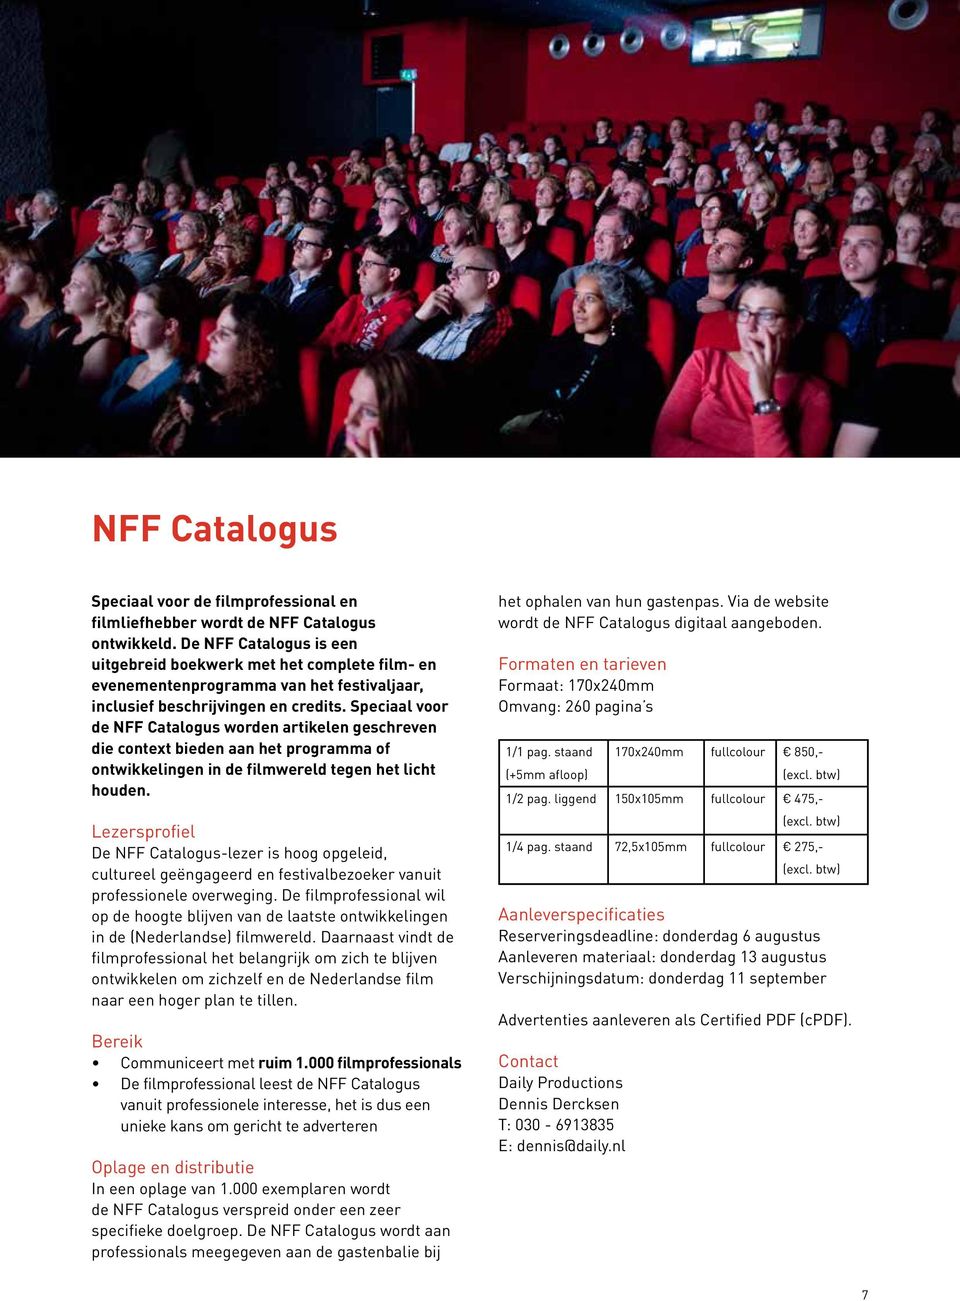 Speciaal voor de NFF Catalogus worden artikelen geschreven die context bieden aan het programma of ontwikkelingen in de filmwereld tegen het licht houden.